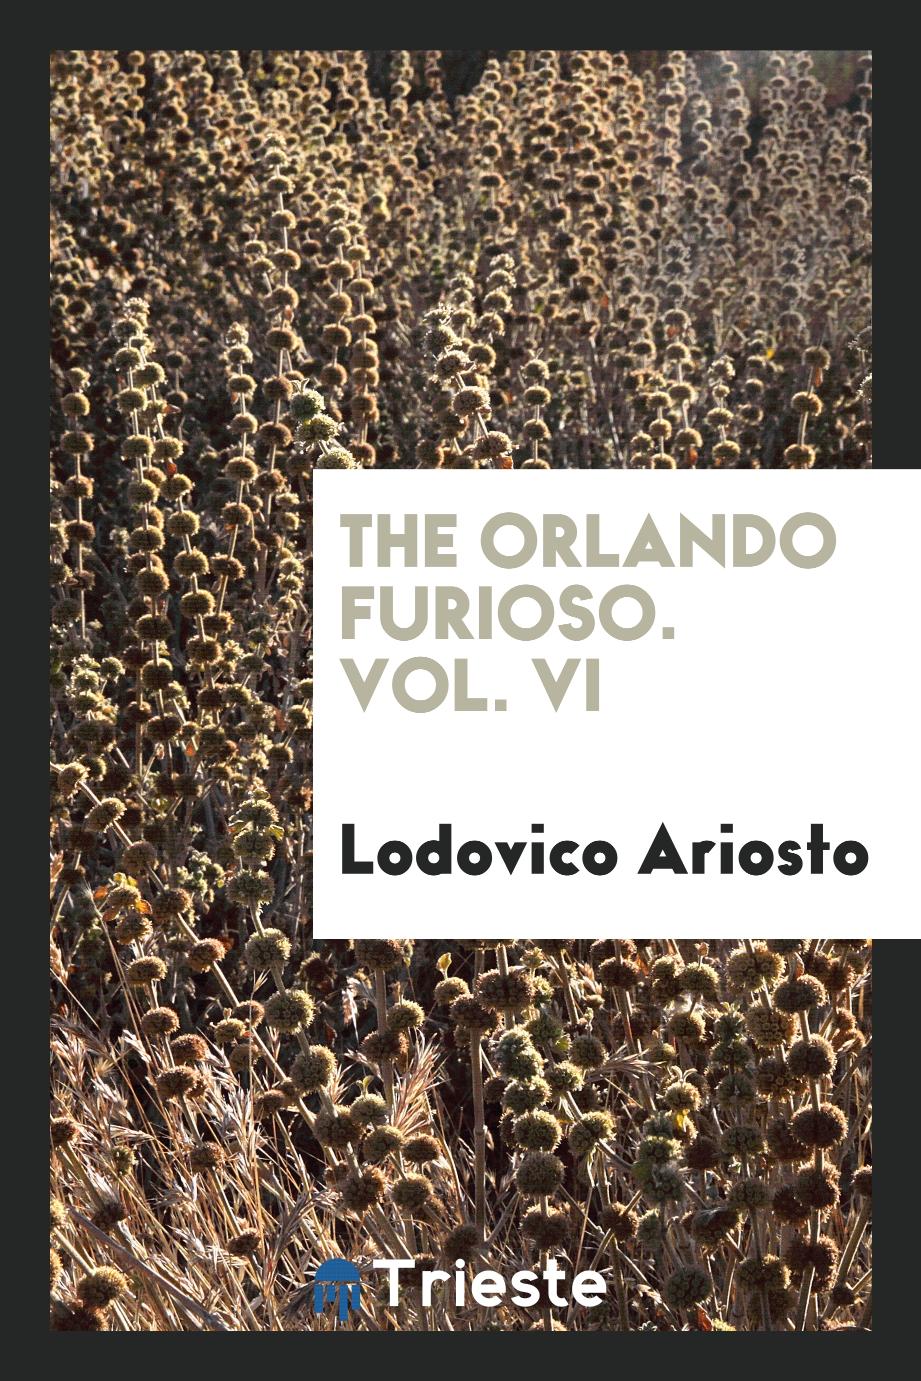 The Orlando furioso. Vol. VI